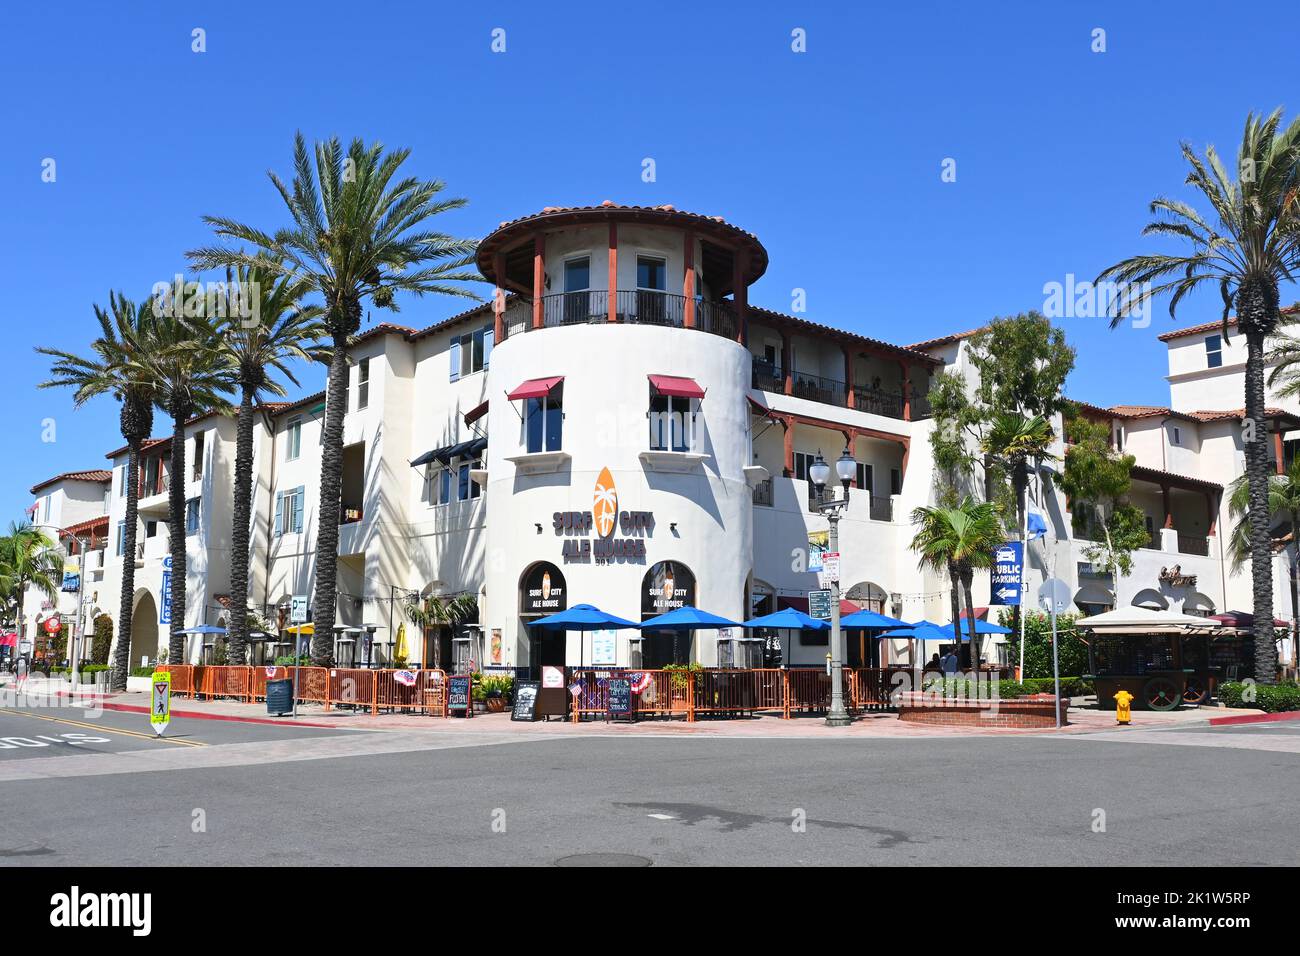 HUNTINGTON BEACH, CALIFORNIA, 19 SEPT 2022: The Surf City Ale House on Main Street. Stock Photo